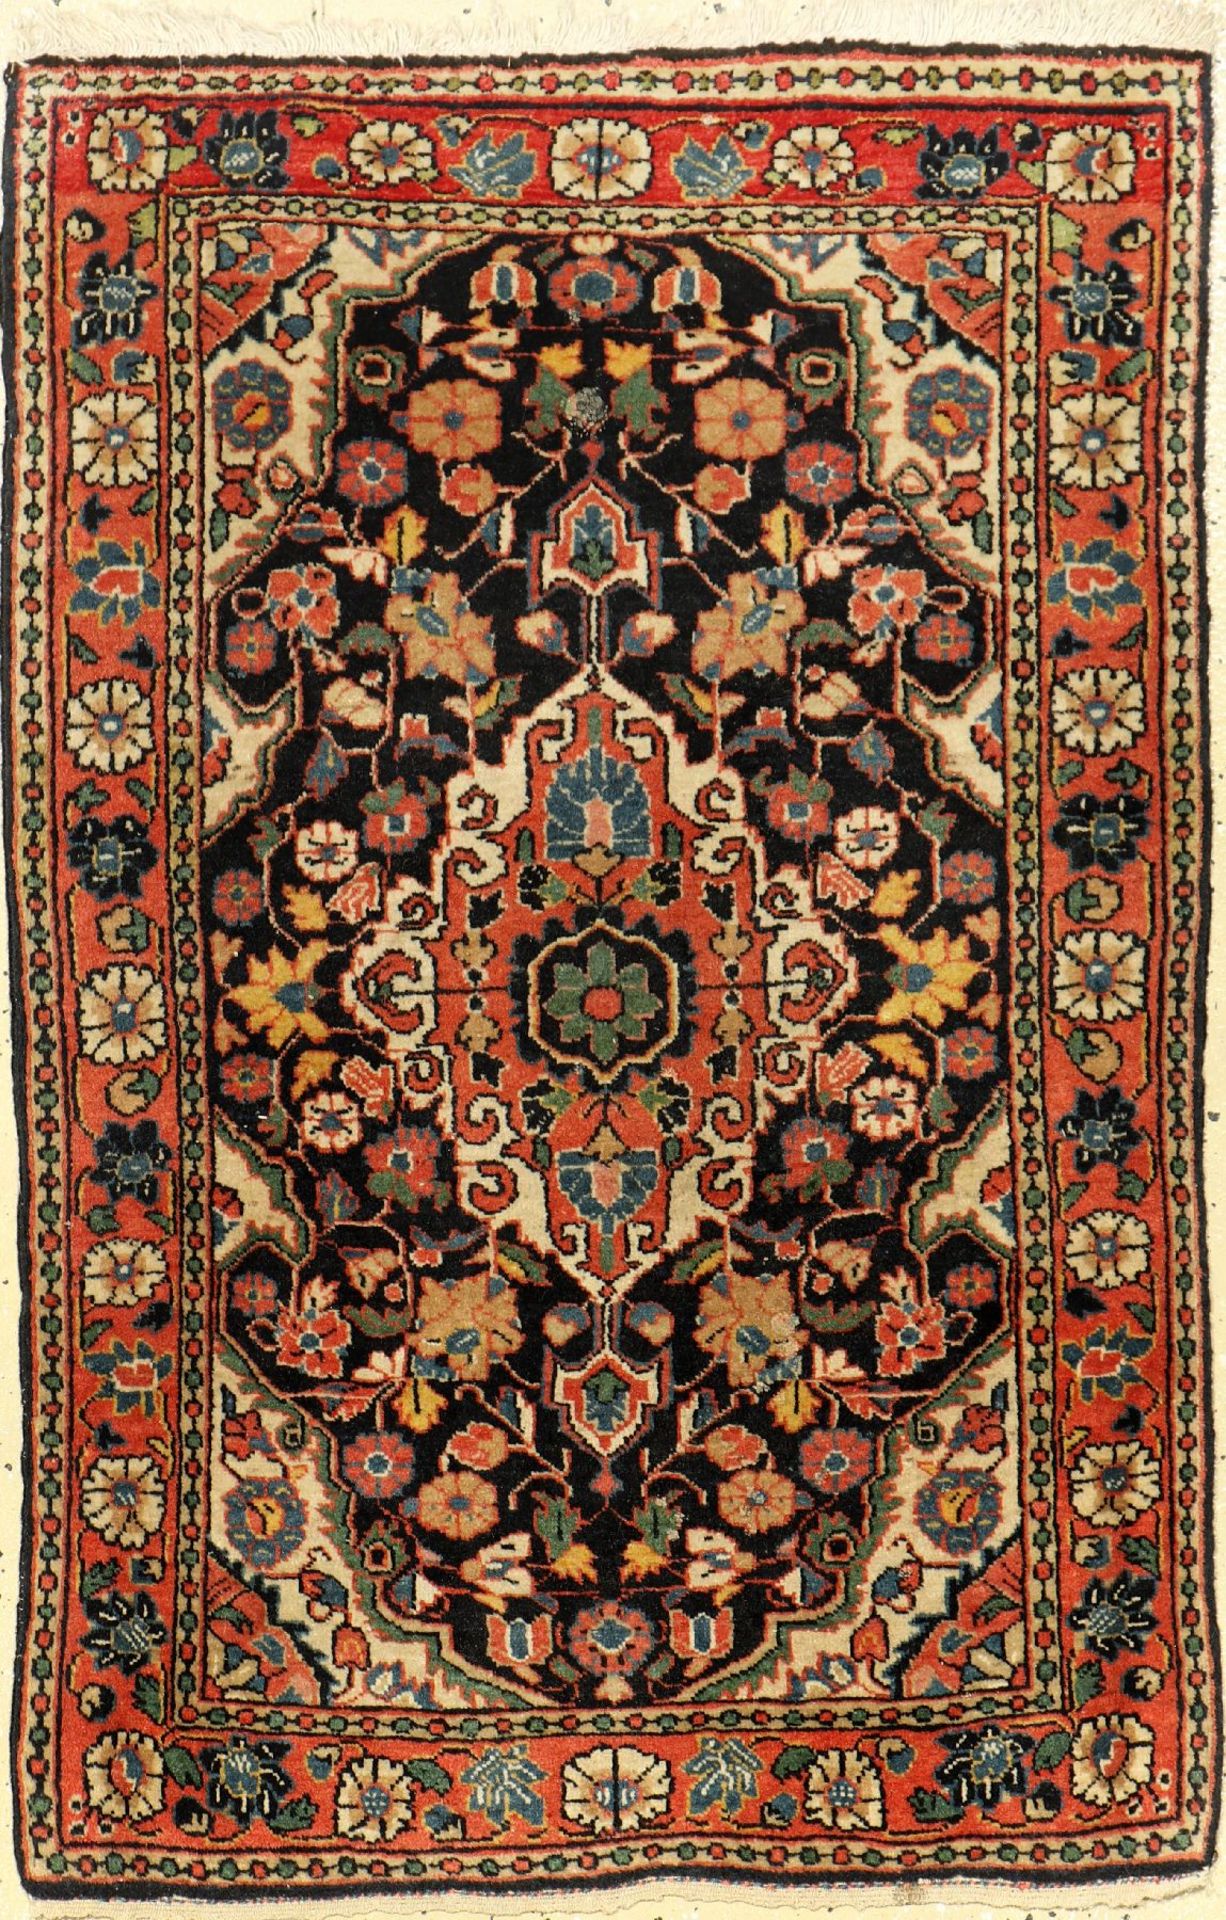 Djosan alt, Persien, ca. 60 Jahre, Wolle auf Baumwolle, ca. 94 x 62 cm, EHZ: 2Jozan Rug, Persia,